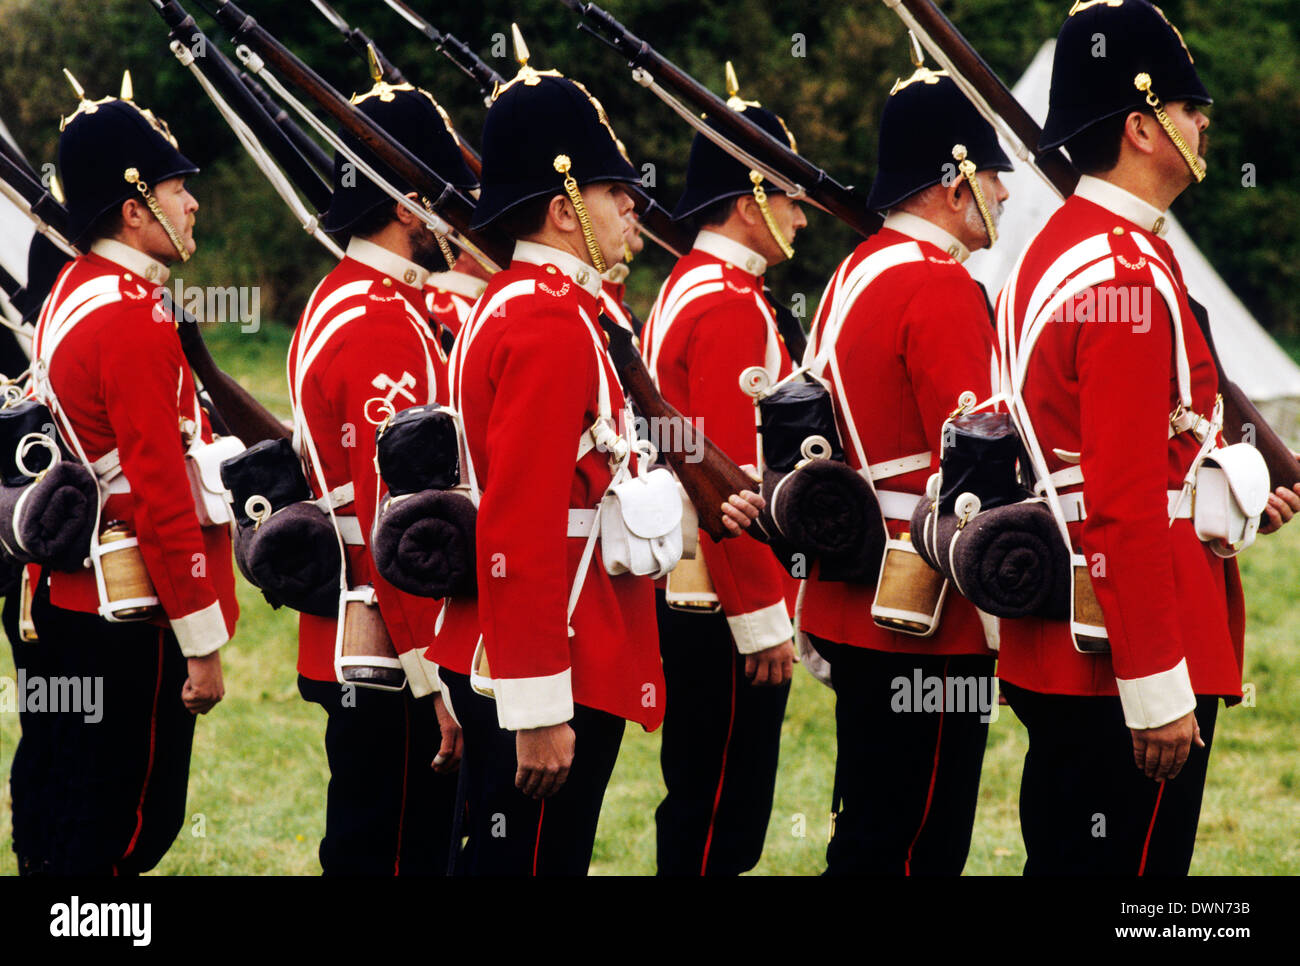 Britische Soldaten der 57th Middlesex Regiment, 1880, Gewehre Reenactment einheitliche Uniformen Fußsoldat Armee England UK Ende 19. Jh. Stockfoto